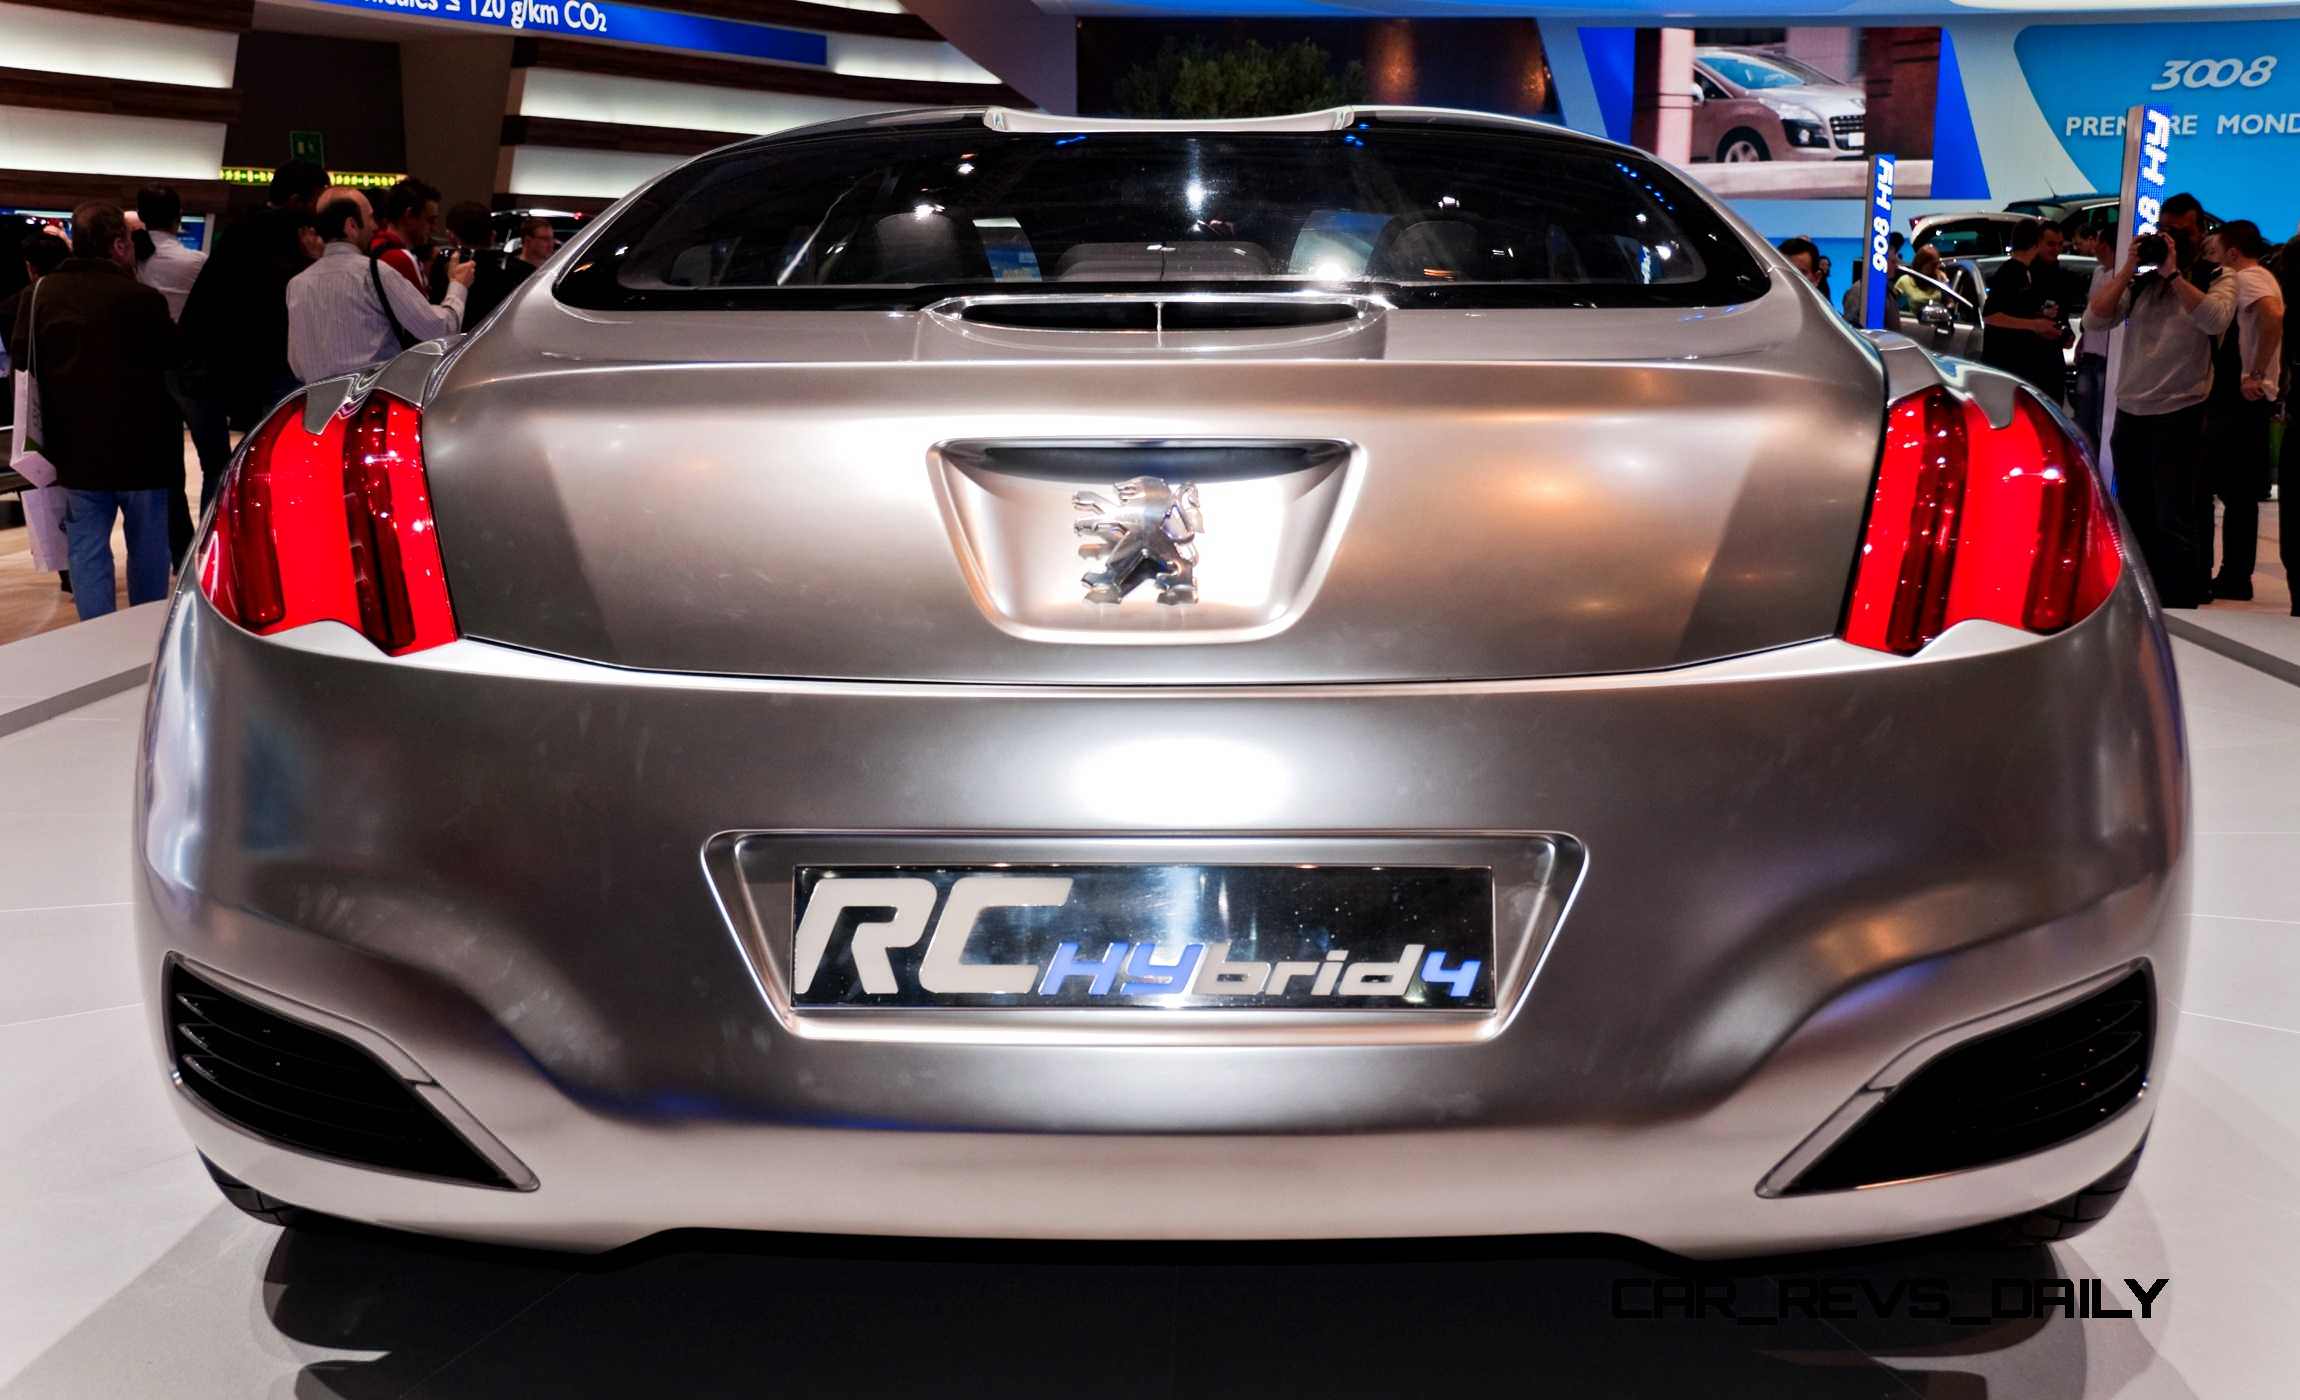 2008 Peugeot RC HYbrid4 Concept